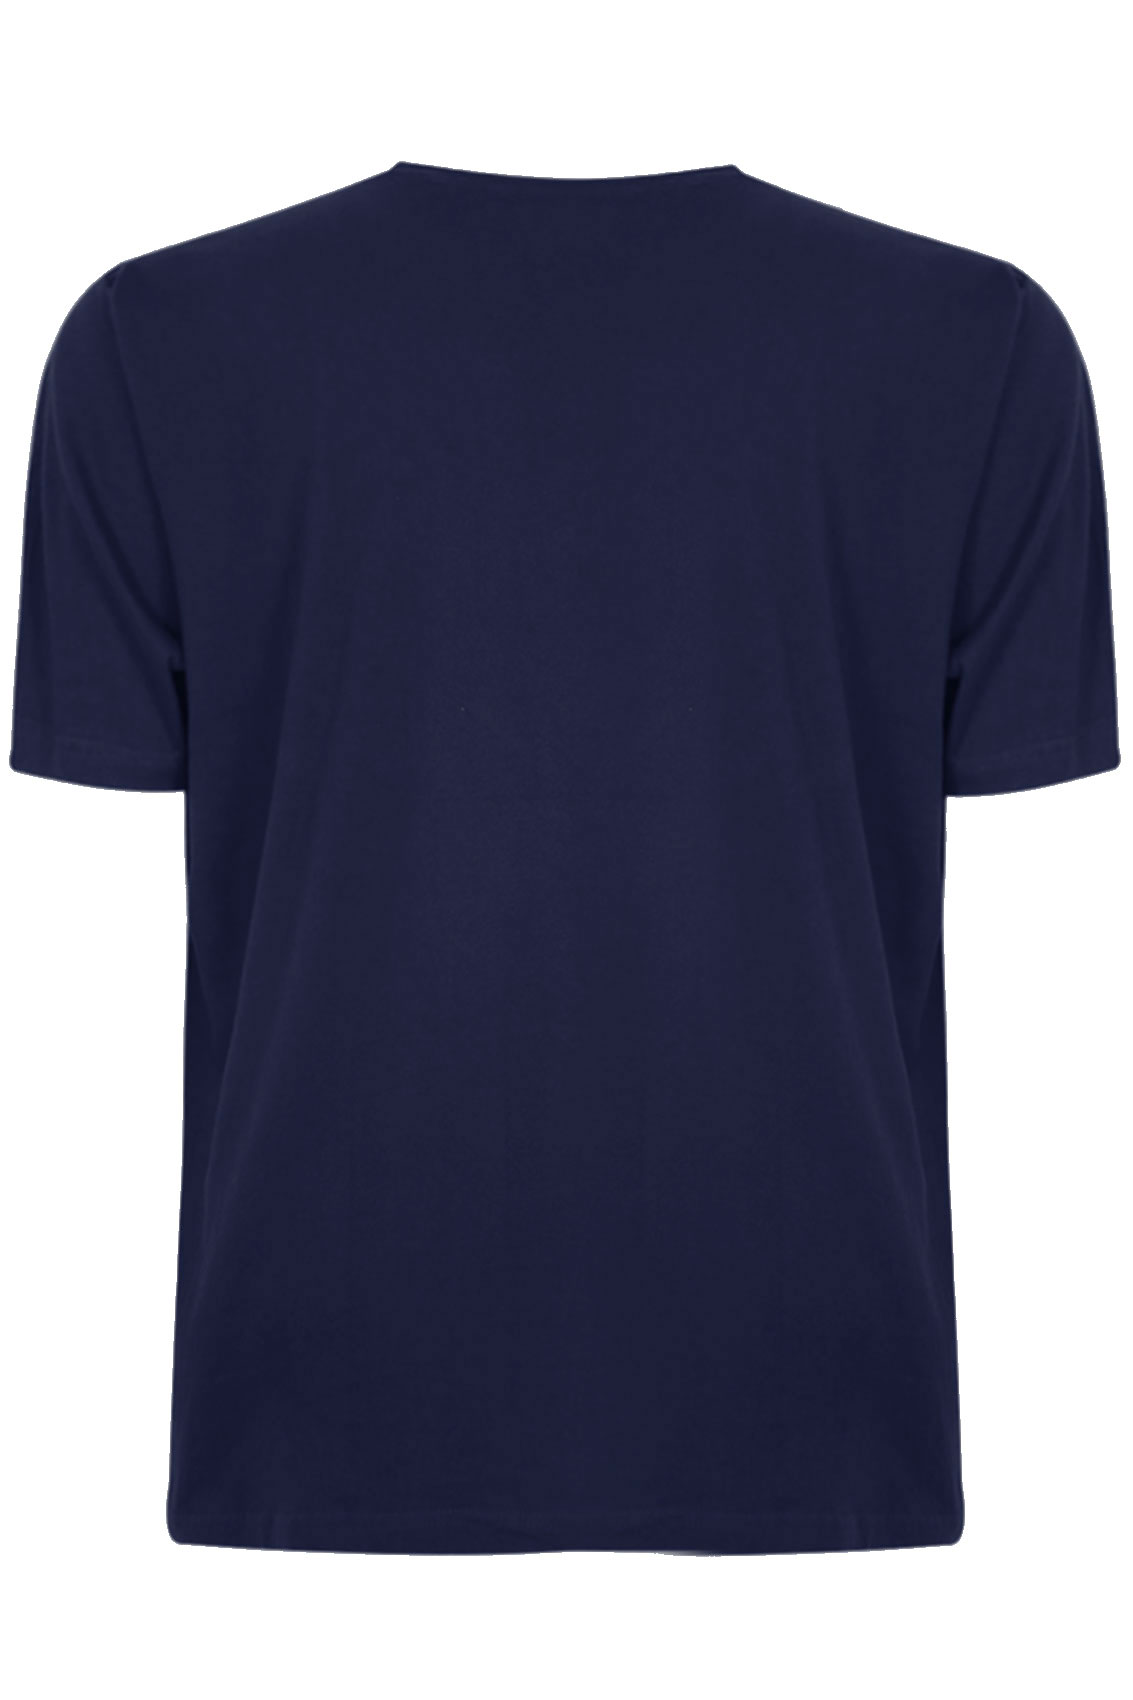 BadRhino Navy Basic Plain Crew Neck T-Shirt Extra large ...